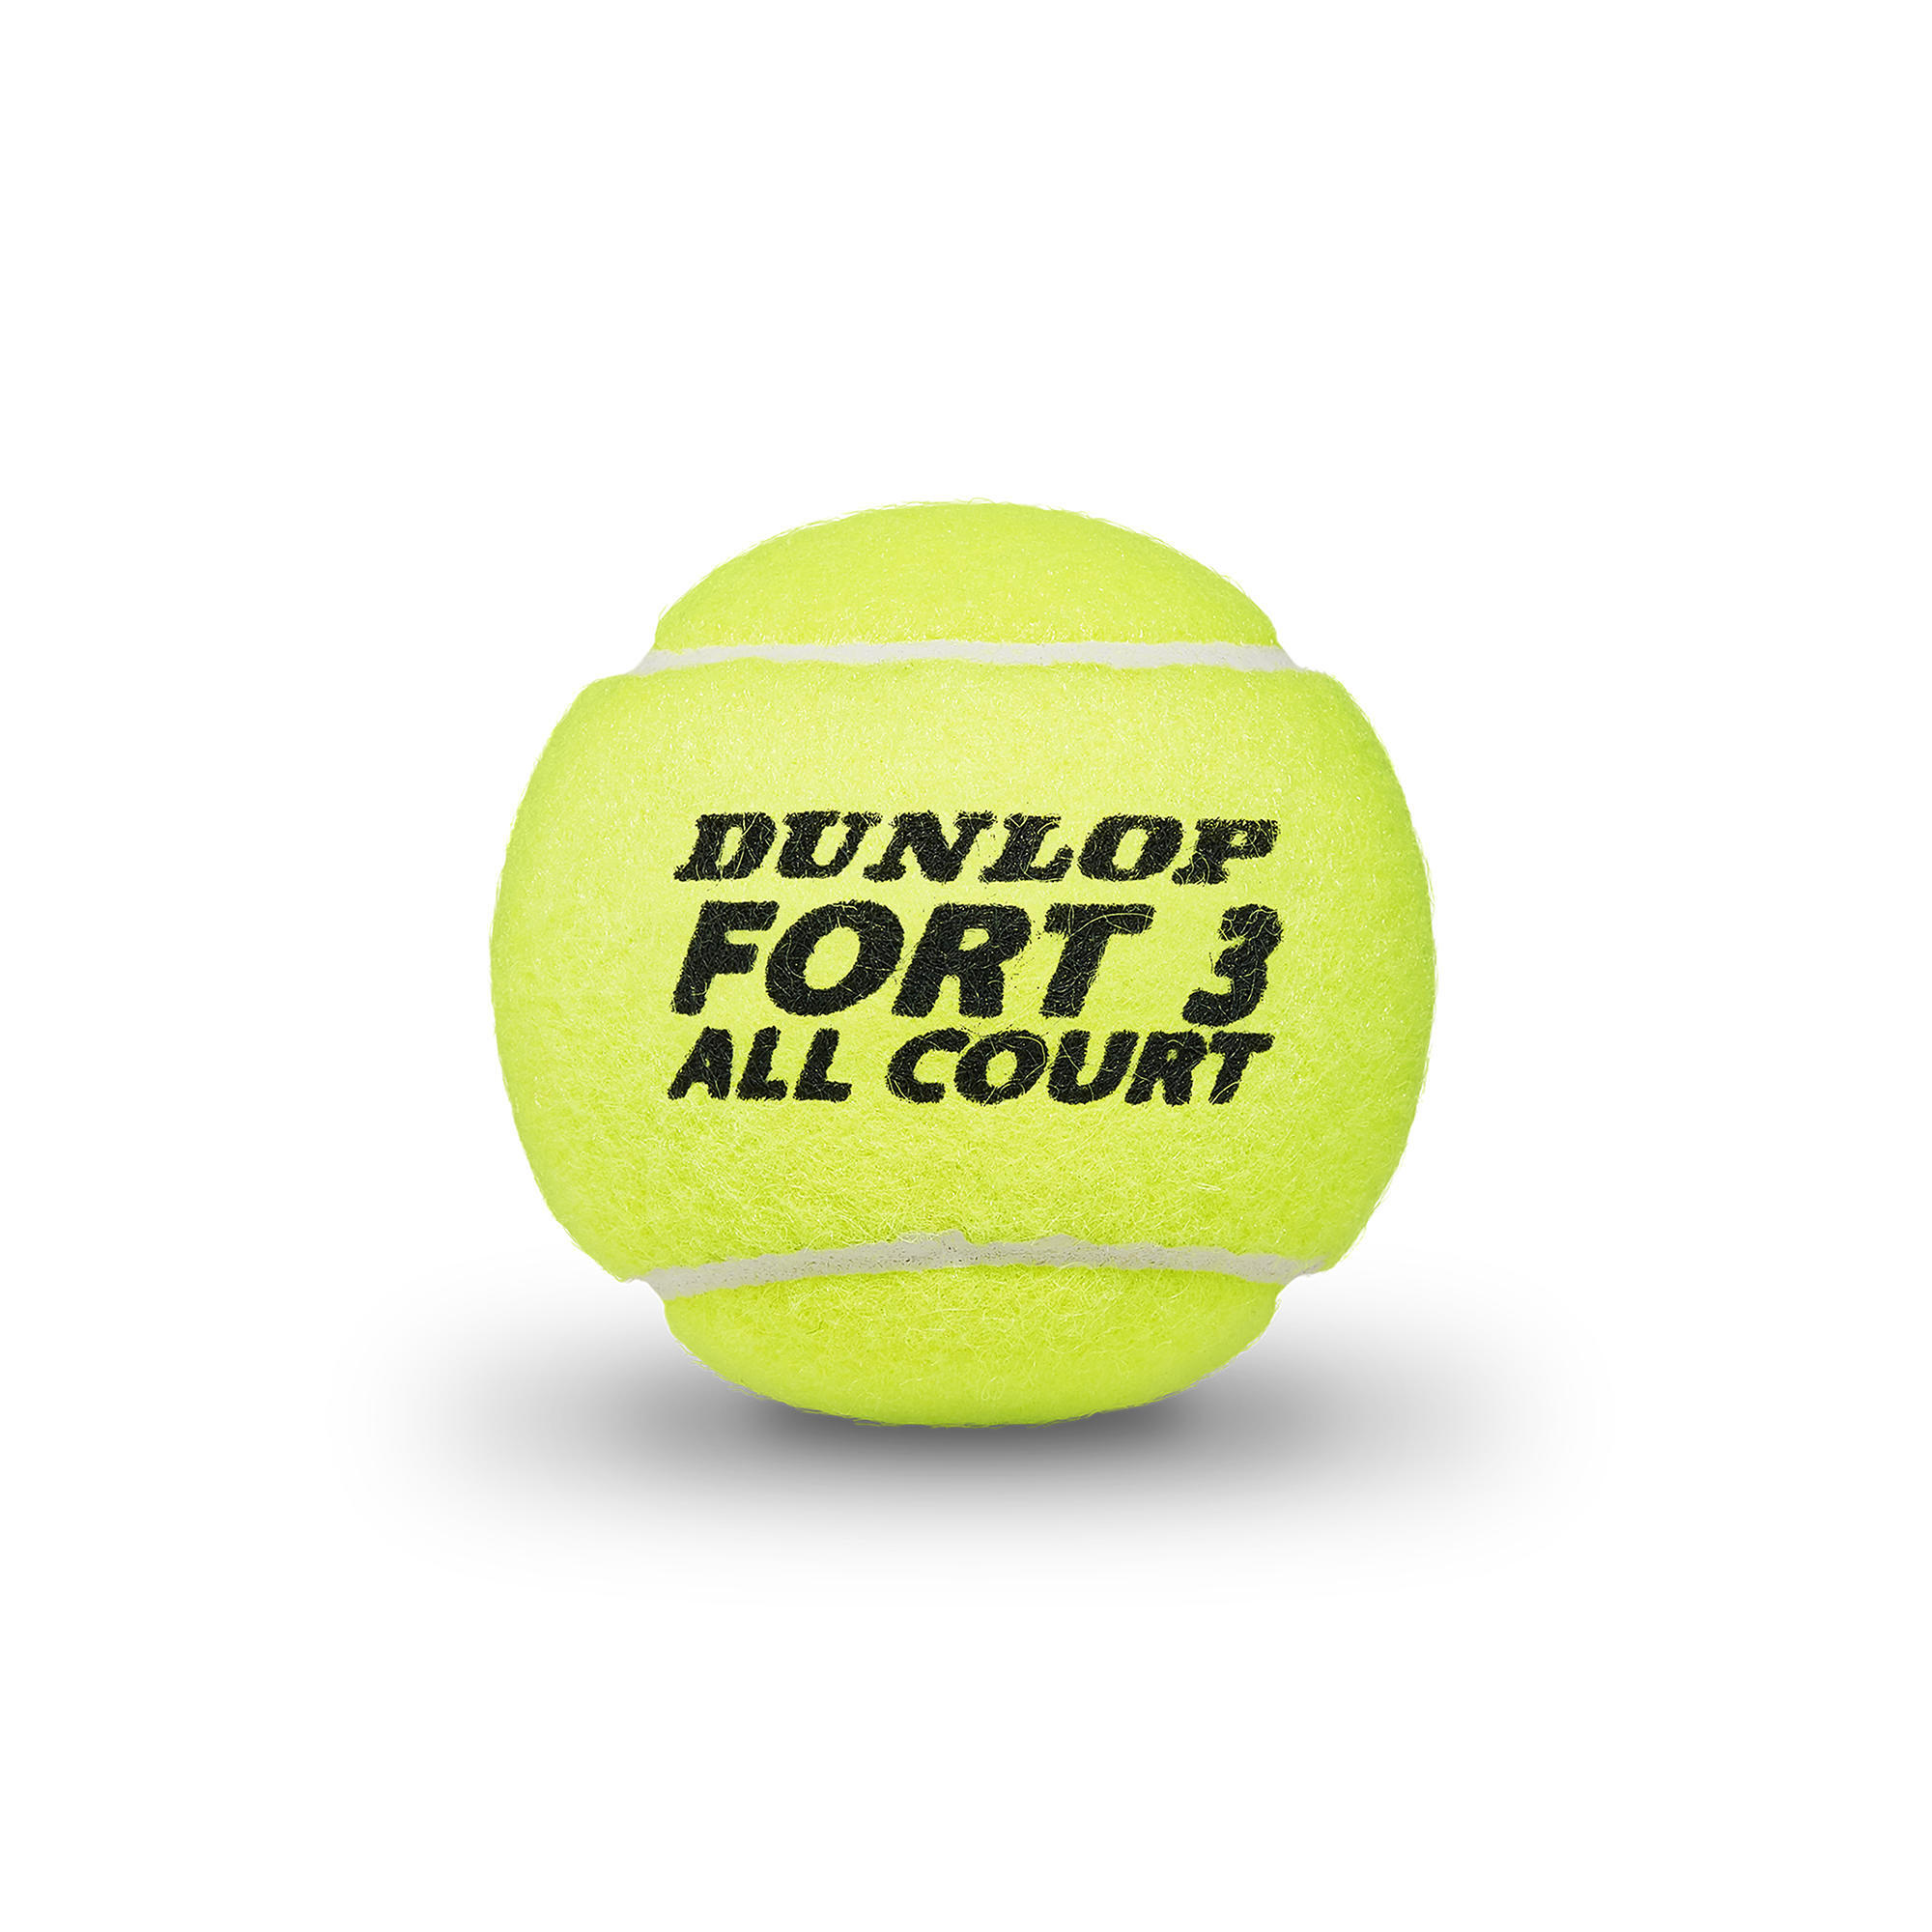 Теннисные мячи Dunlop Fort All Court Control, банка 4 шт., неоново-желтый мячи для большого тенниса dunlop fort all court 4b